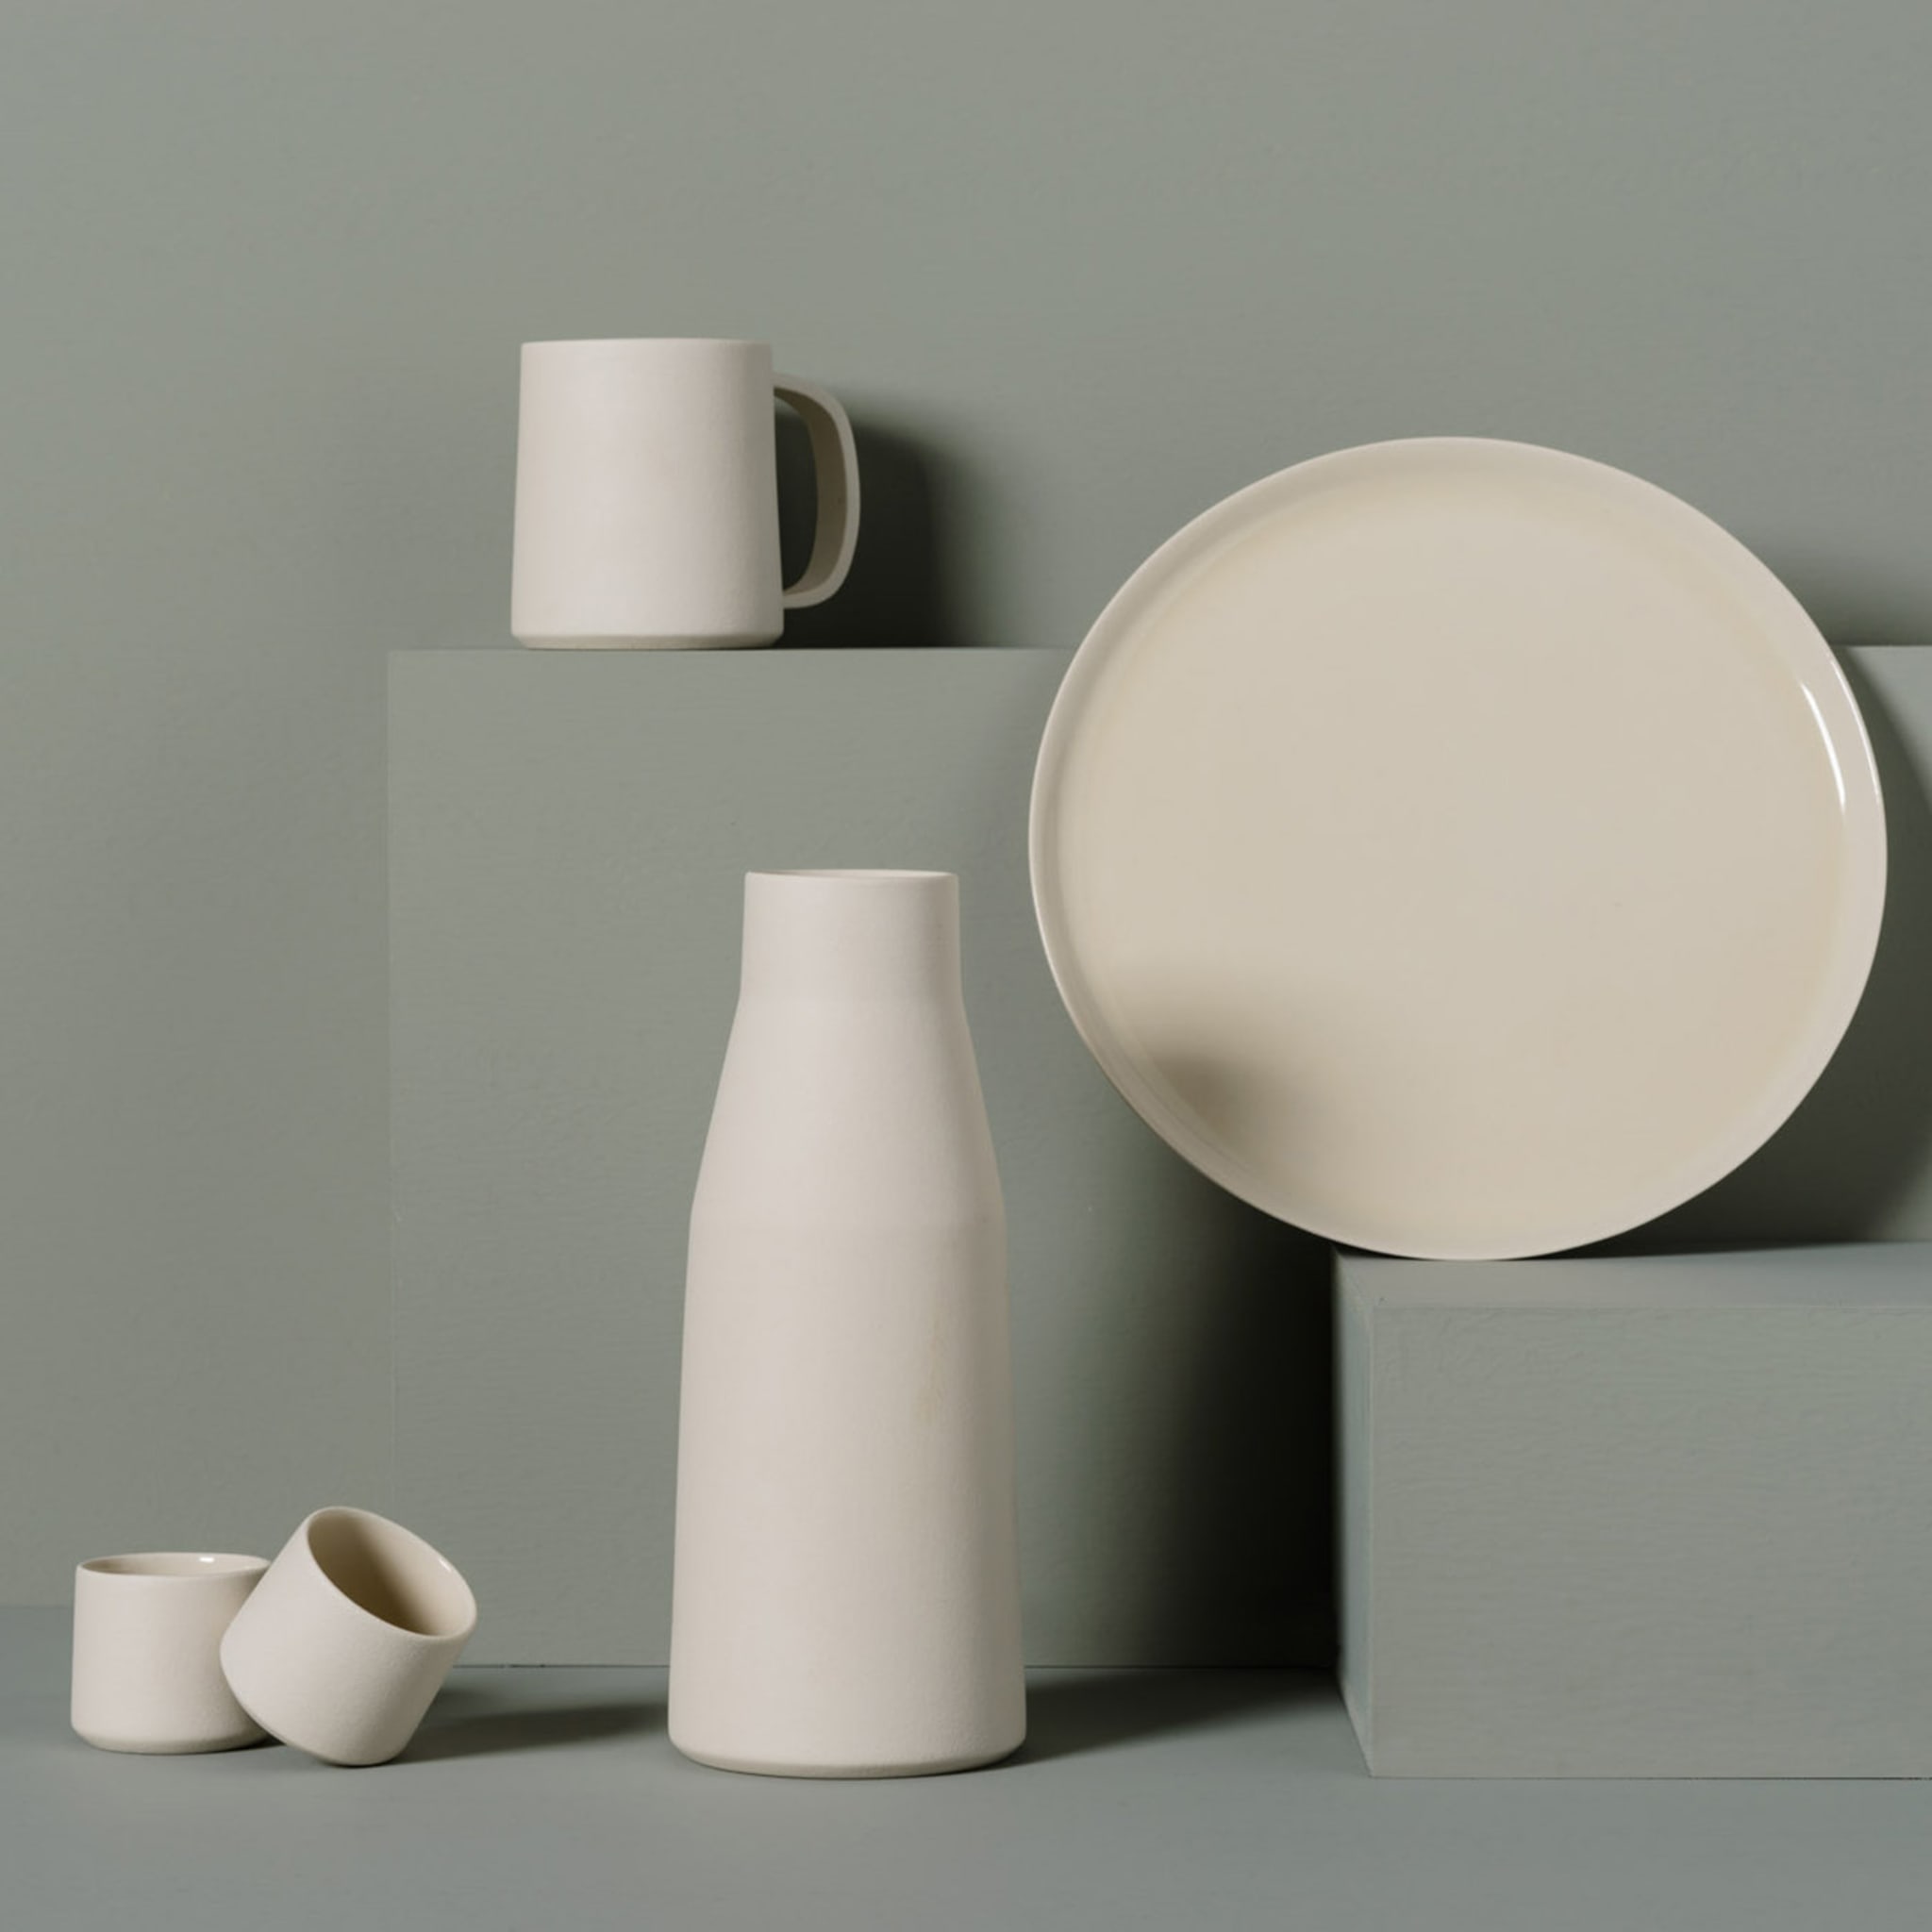 White Ceramic Vase or Carafe - Alternative view 1